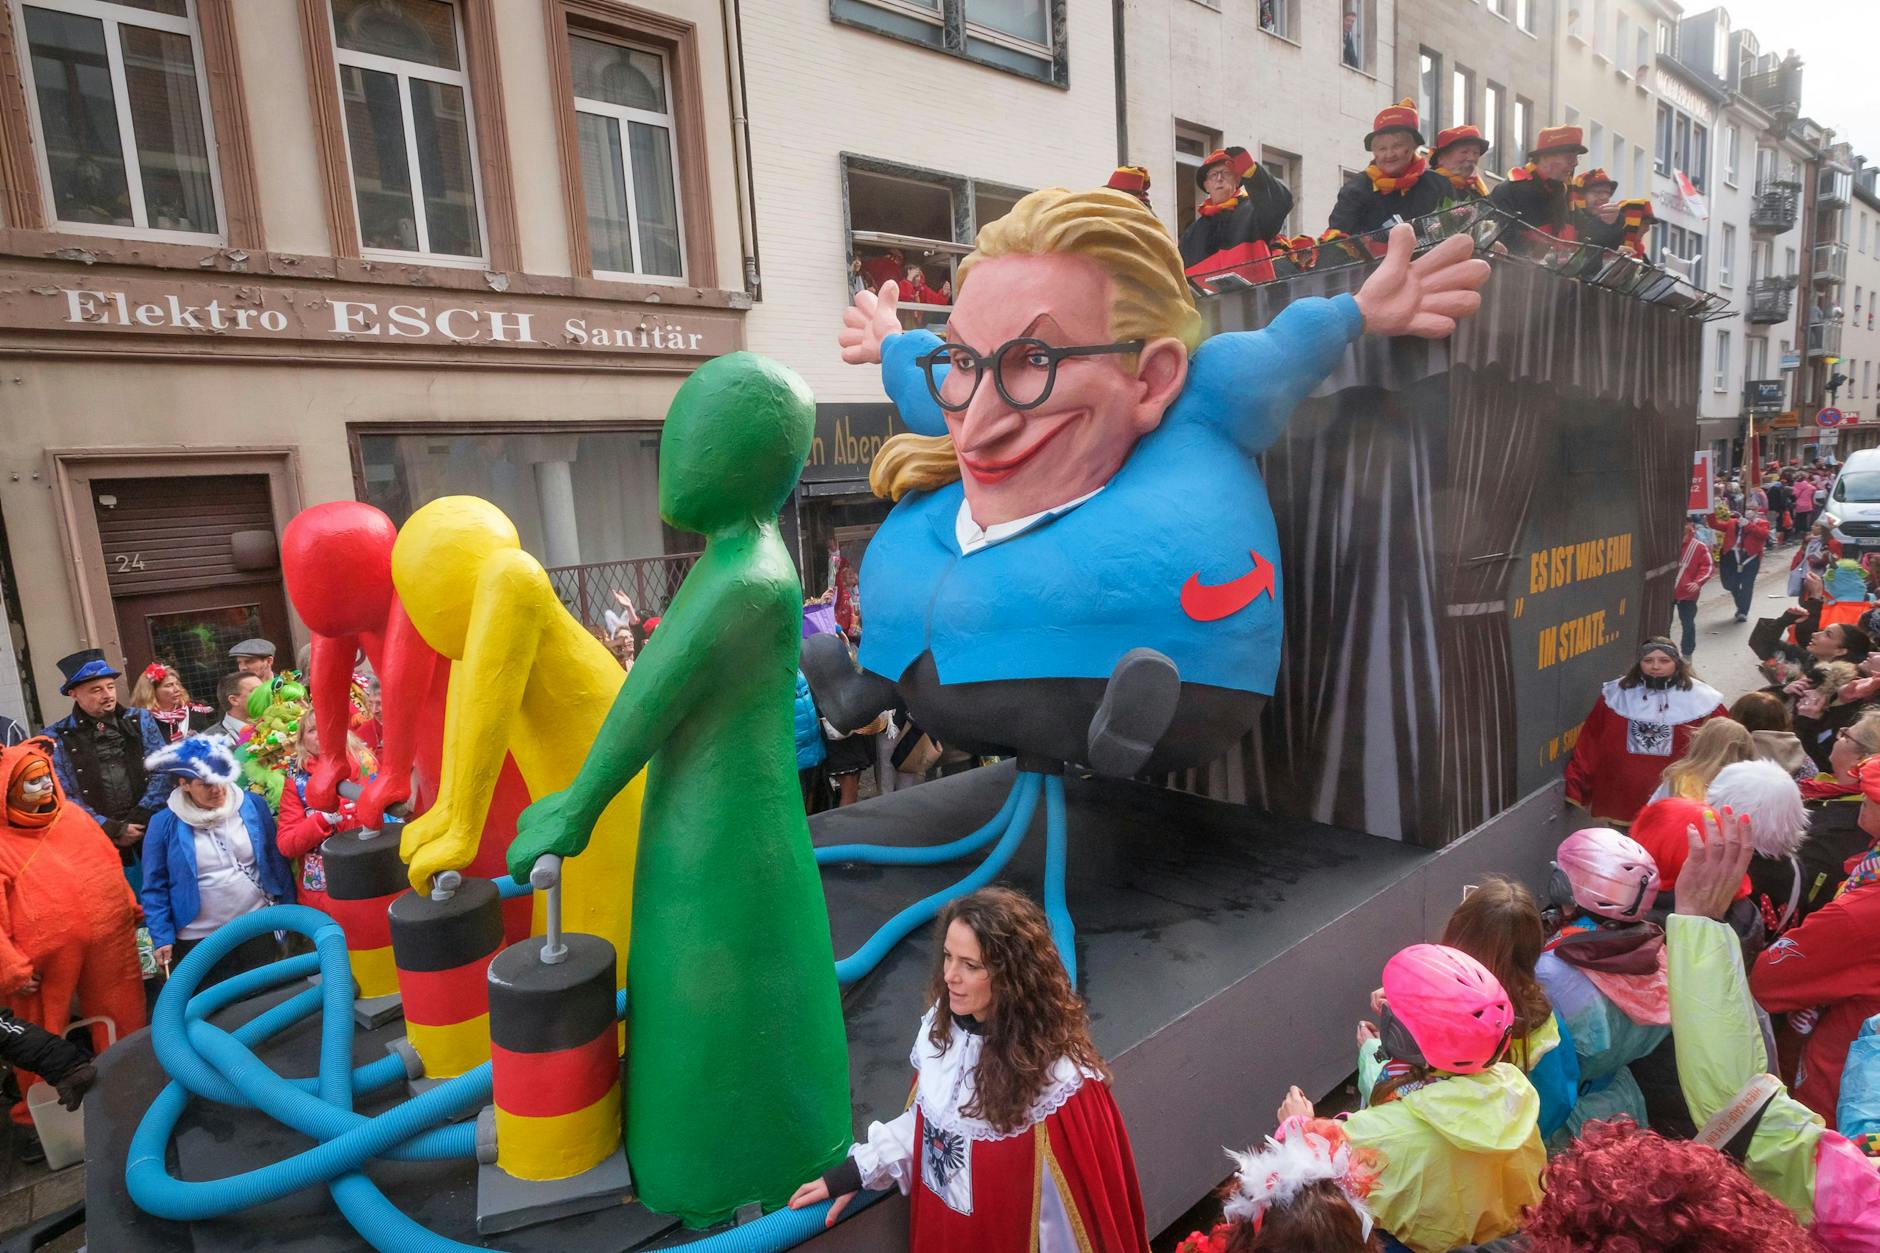 Auf einem Motivwagen in Köln pumpen die drei Parteien der Ampel-Regierung mit ihrer Politik die AfD-Bundestagsfraktionsvorsitzende Alice Weidel wie einen Ballon auf.